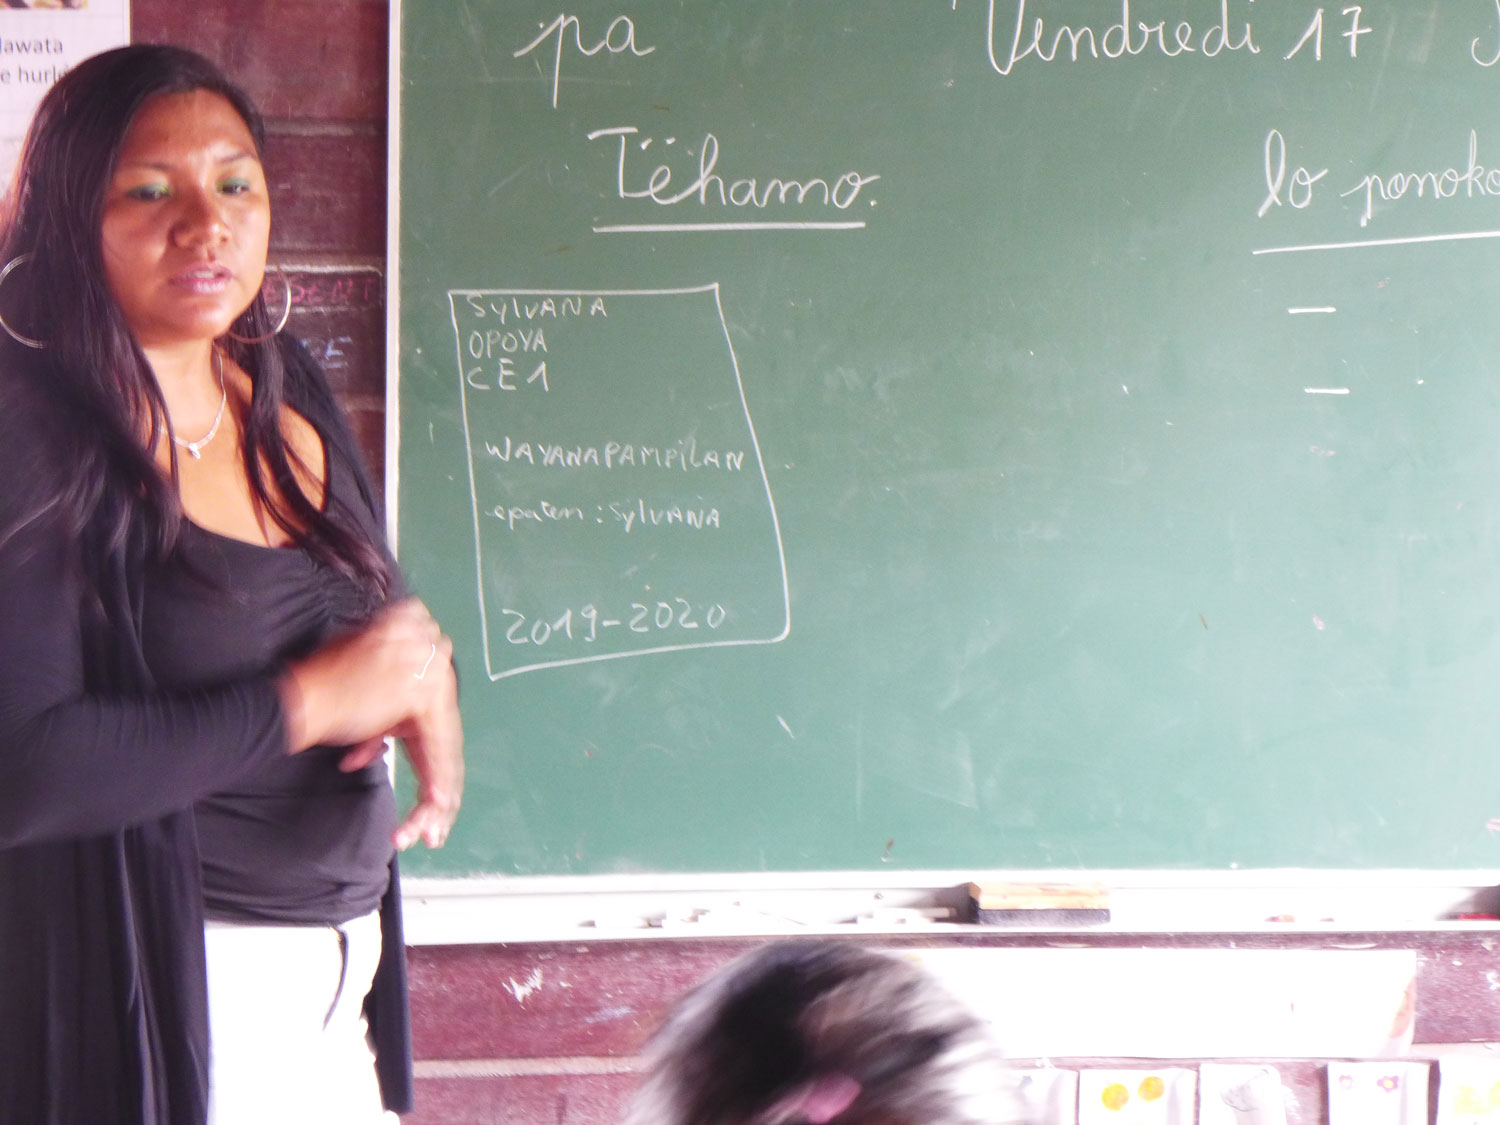 Sylvana pendant son cours en wayana devant ses élèves de CE1.